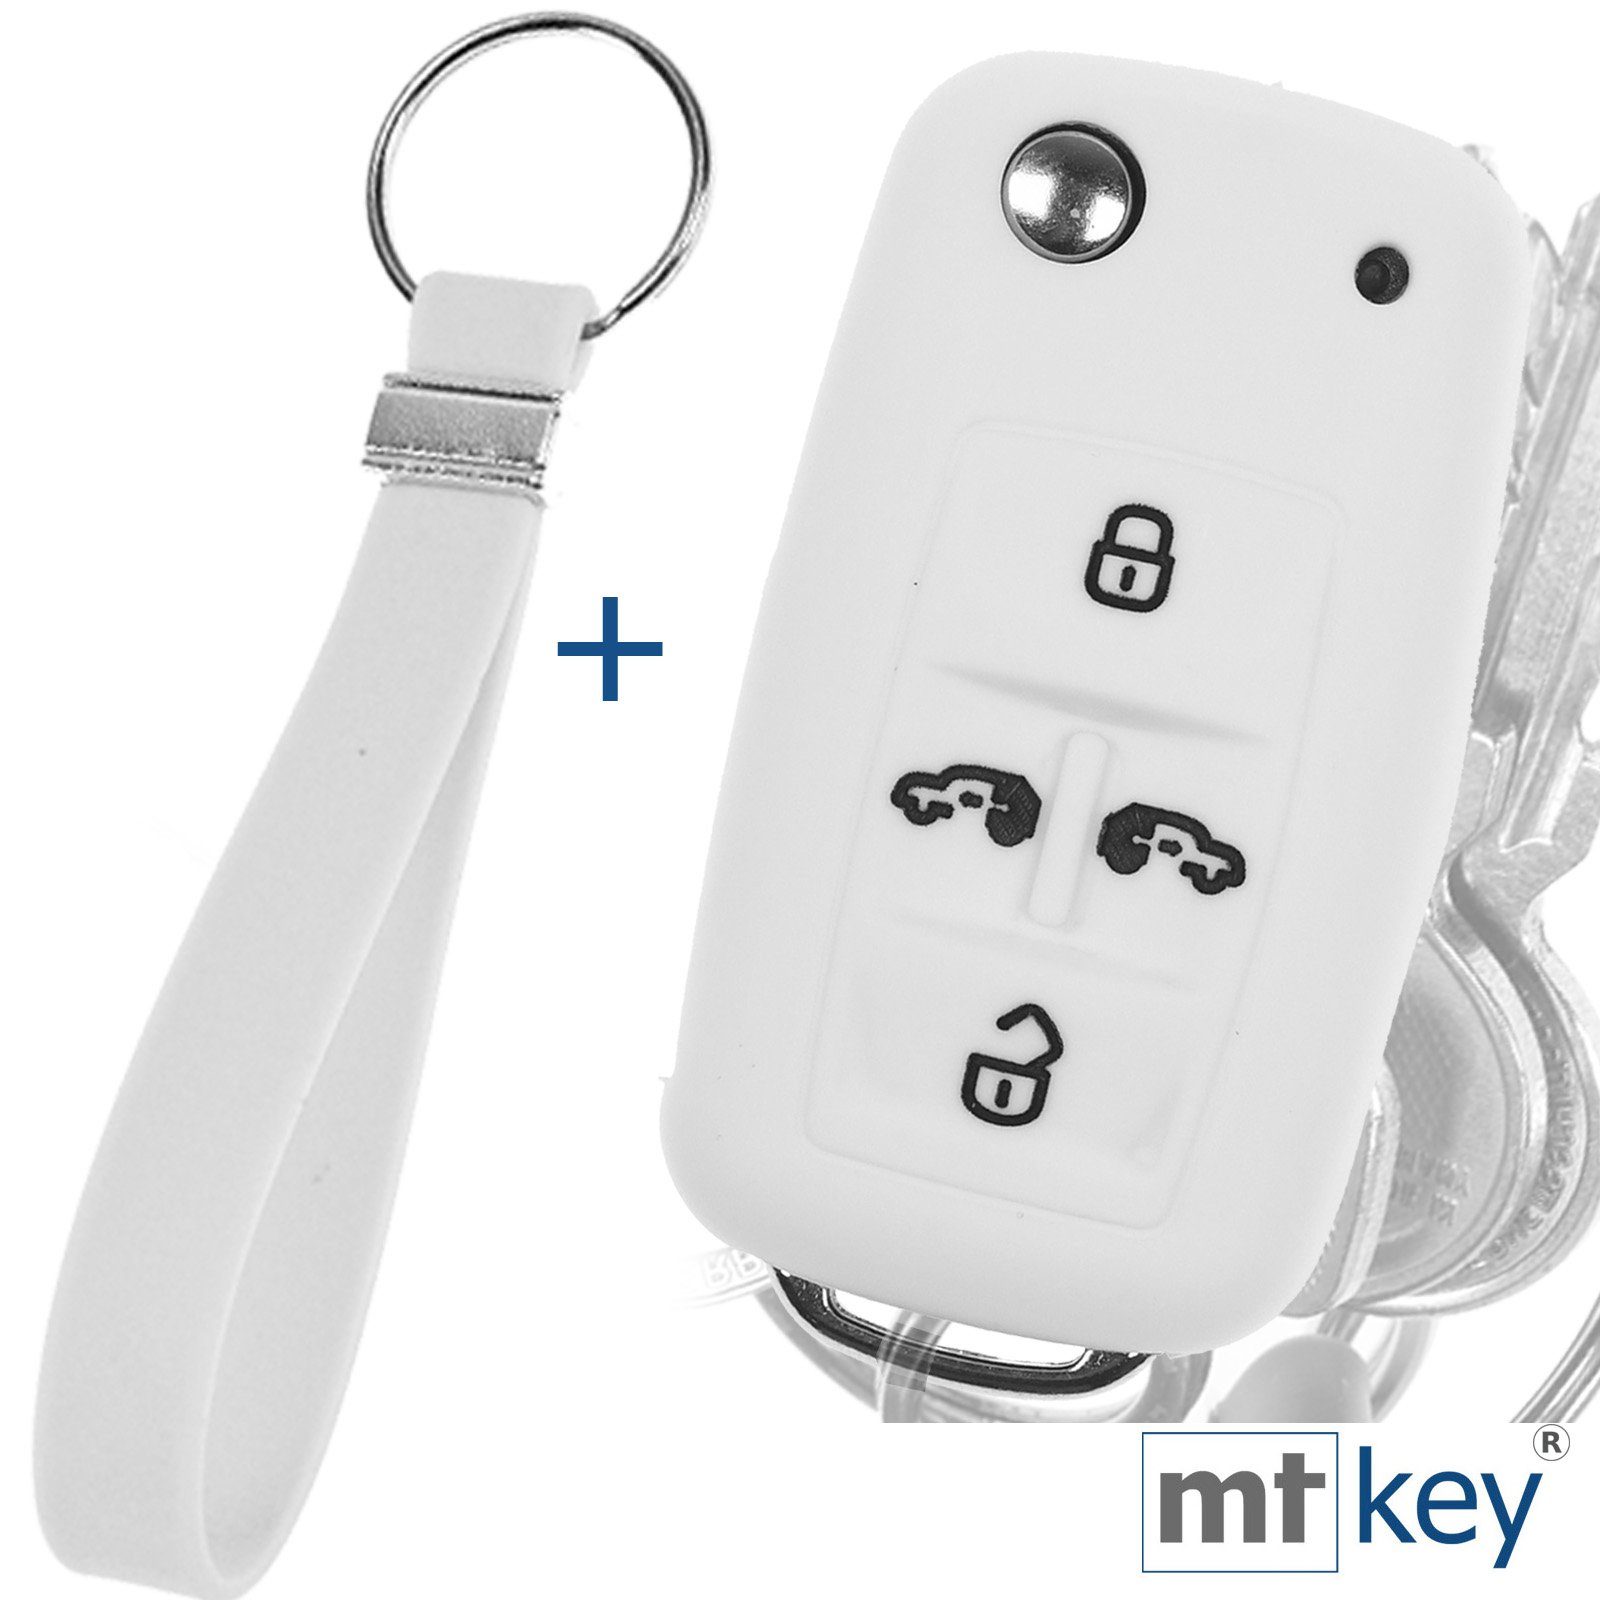 mt-key Schlüsseltasche Autoschlüssel Silikon Schutzhülle im Wabe Design Weiß + Schlüsselband, für VW Multivan Sharan T5 T6 Caddy Seat Alhambra 4 Tasten Schlüssel